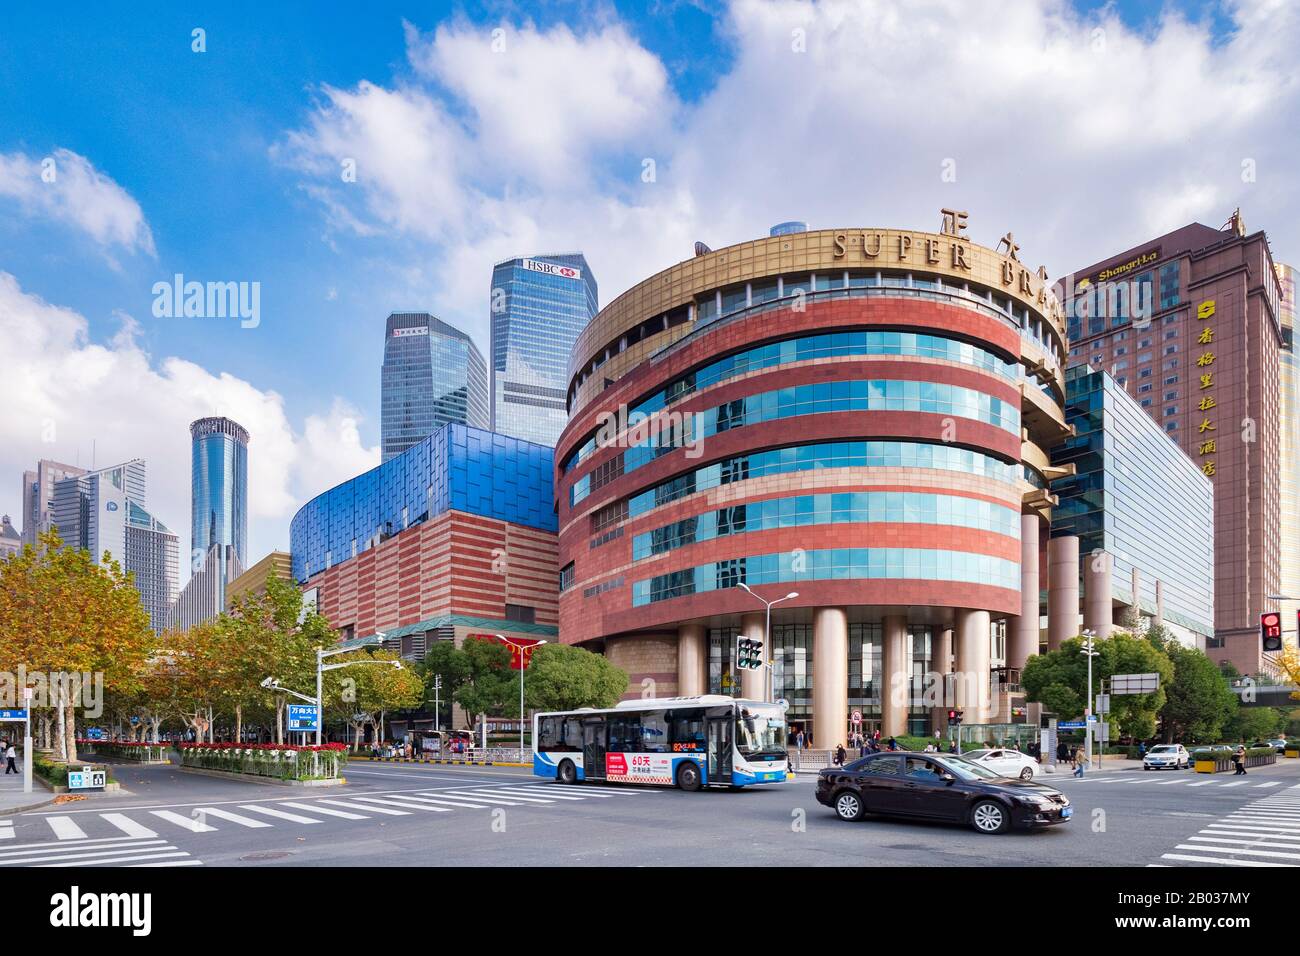 1 dicembre 2018: Shanghai, Cina - Super Brand Mall, un centro commerciale di 13 piani tra i moderni highrises del quartiere di Pudong. Foto Stock